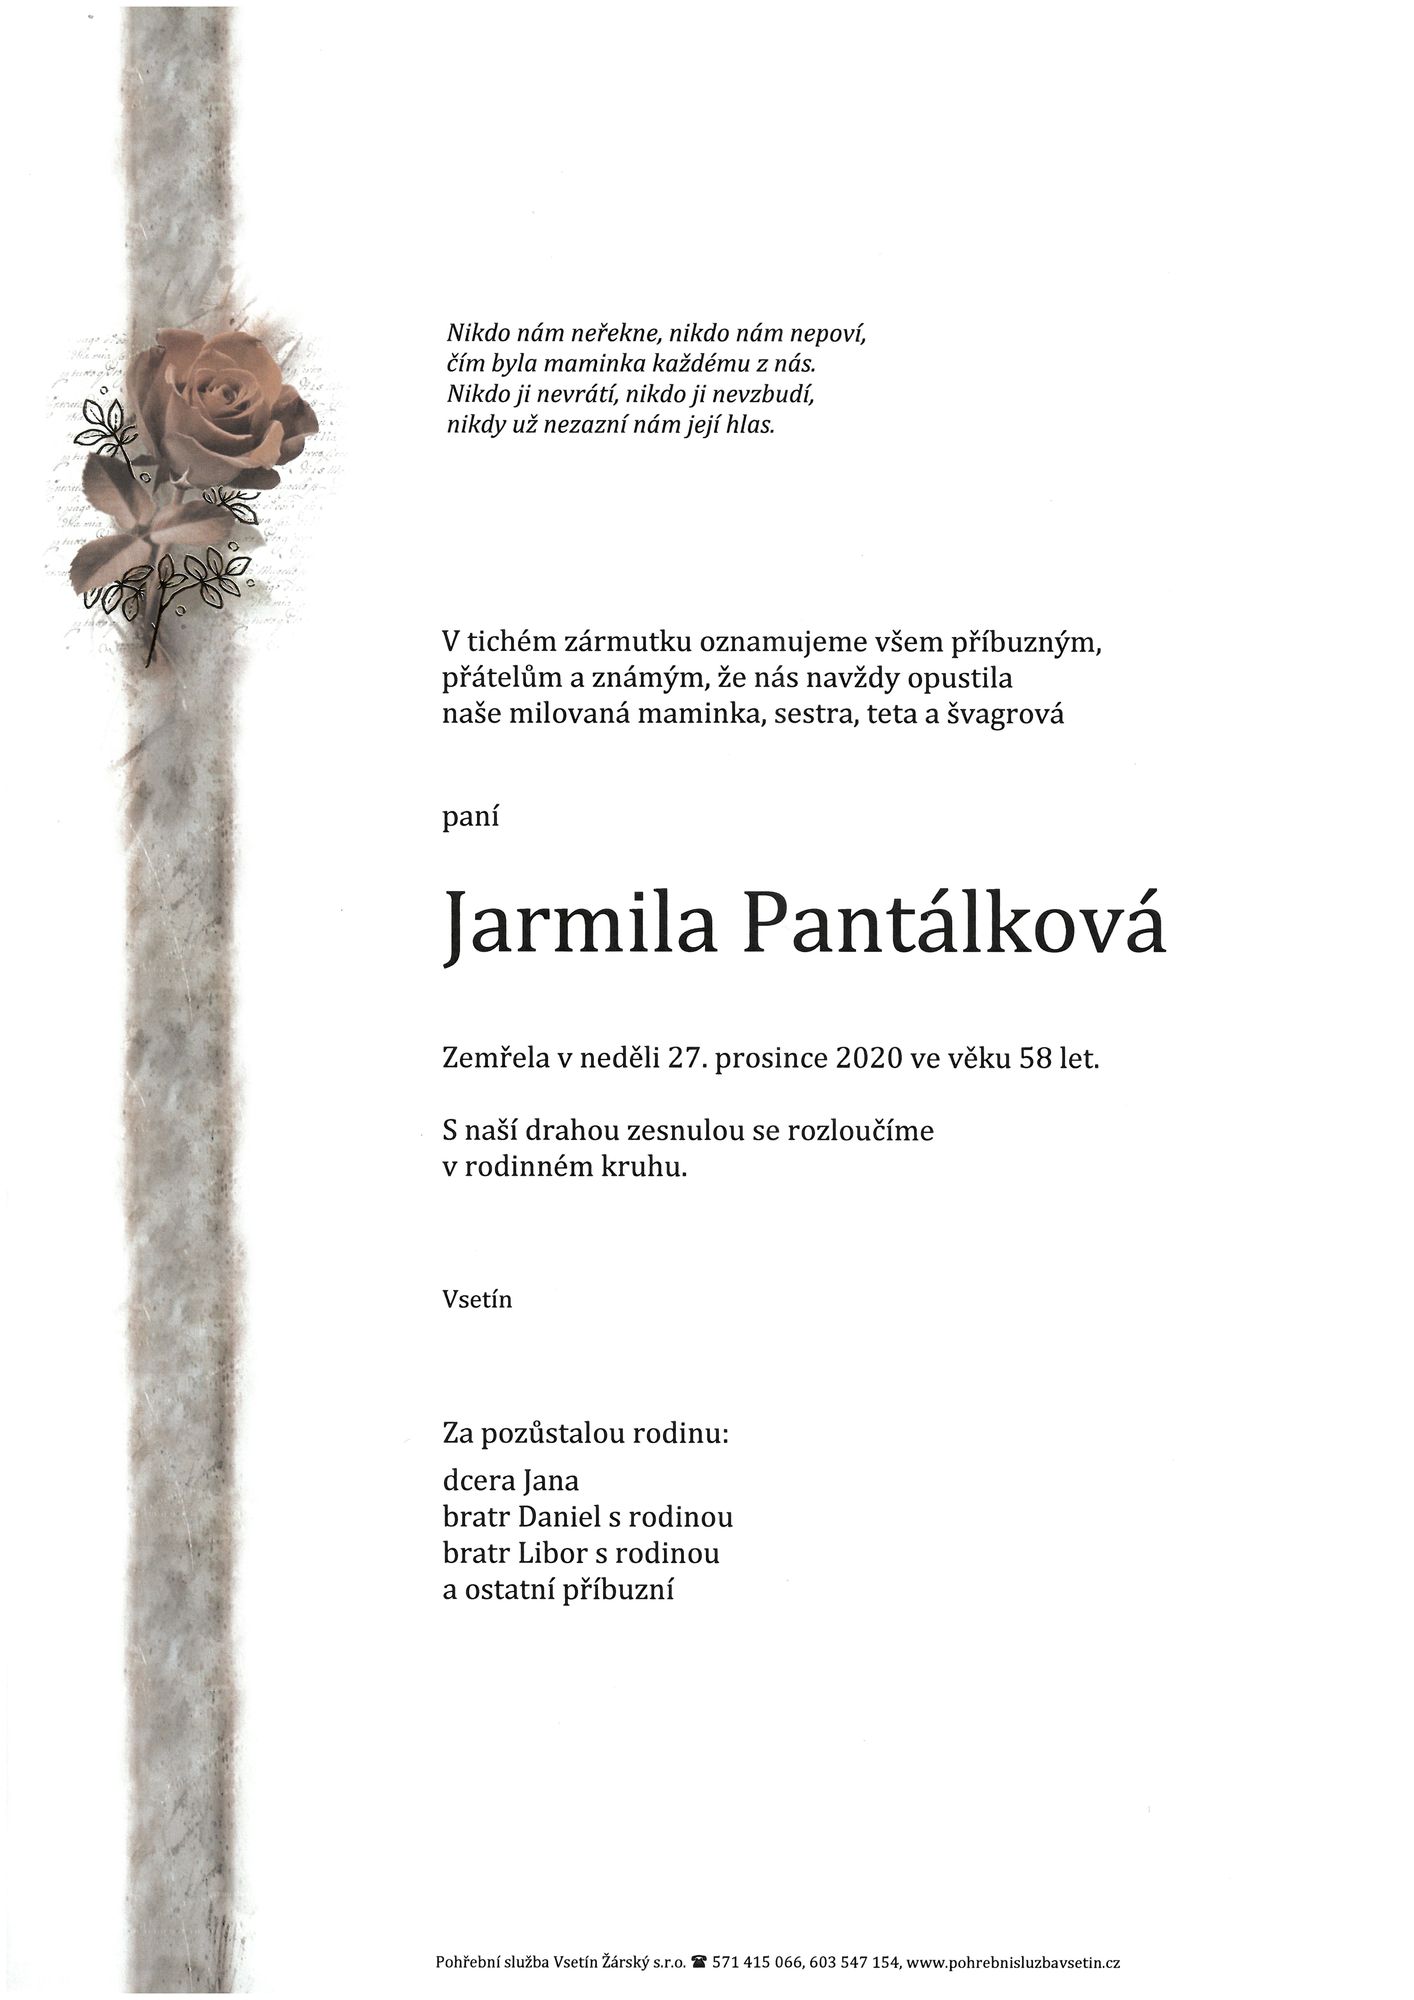 Jarmila Pantálková